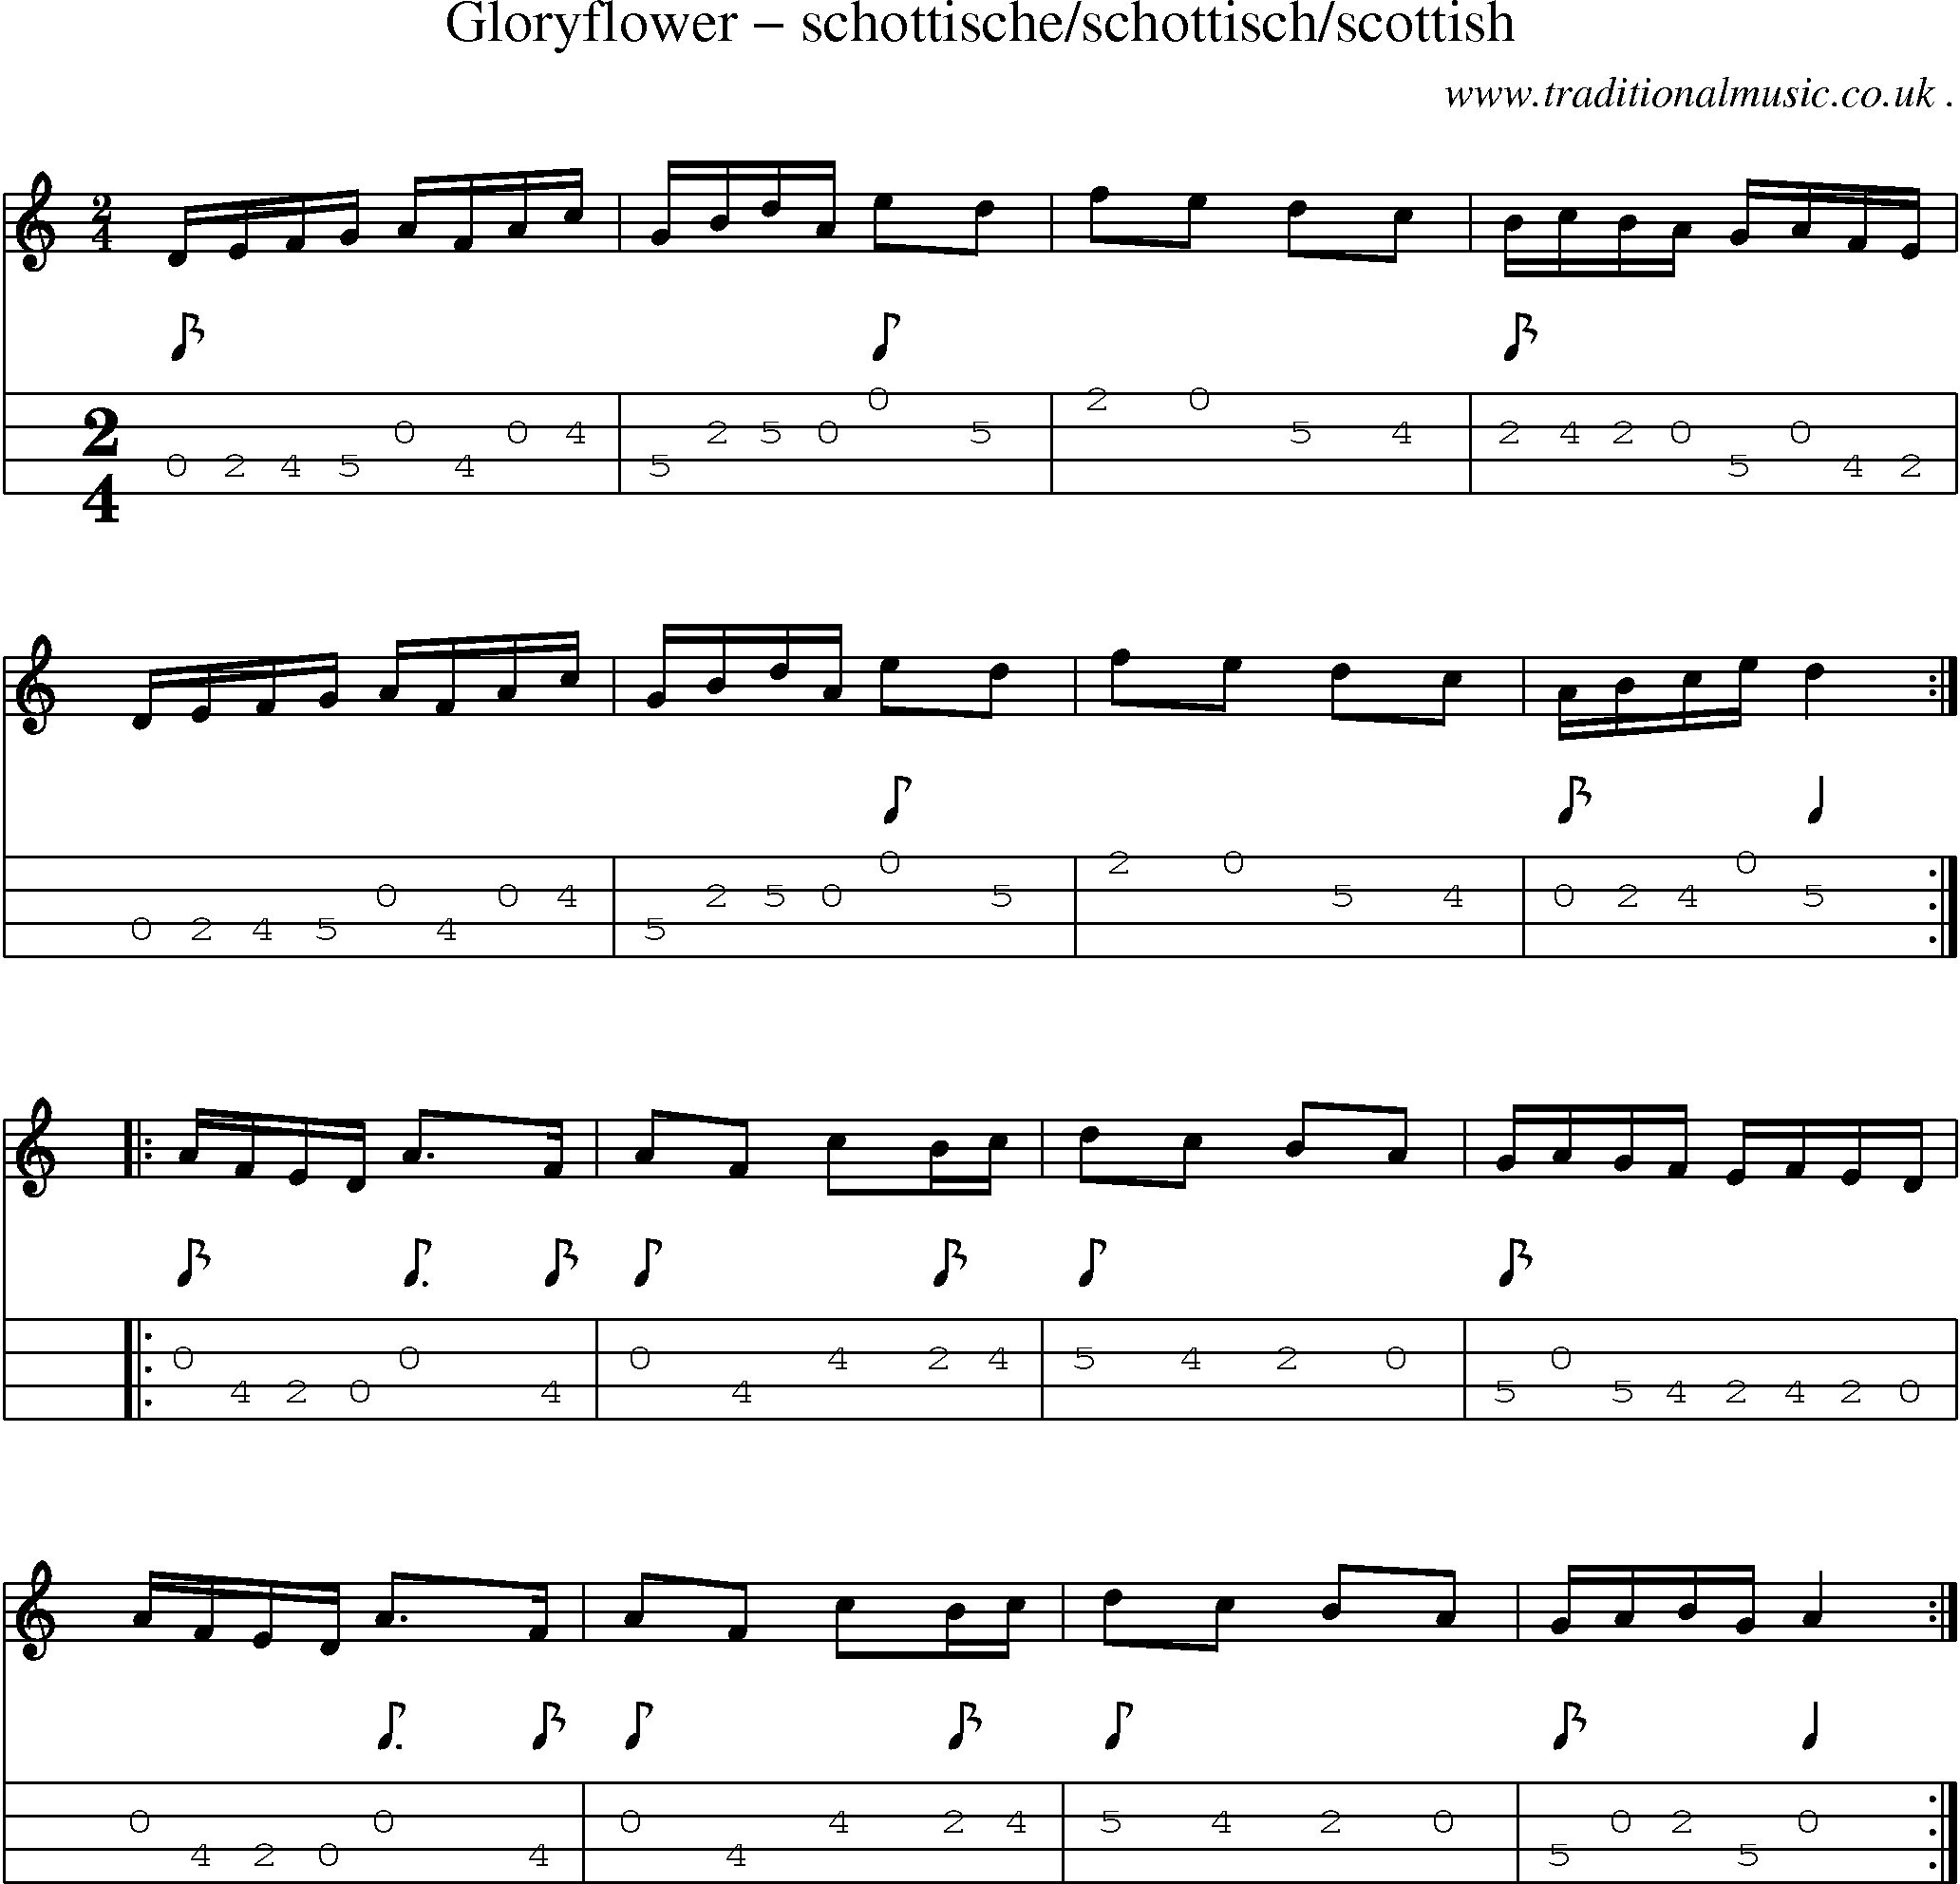 Sheet-Music and Mandolin Tabs for Gloryflower Schottischeschottischscottish